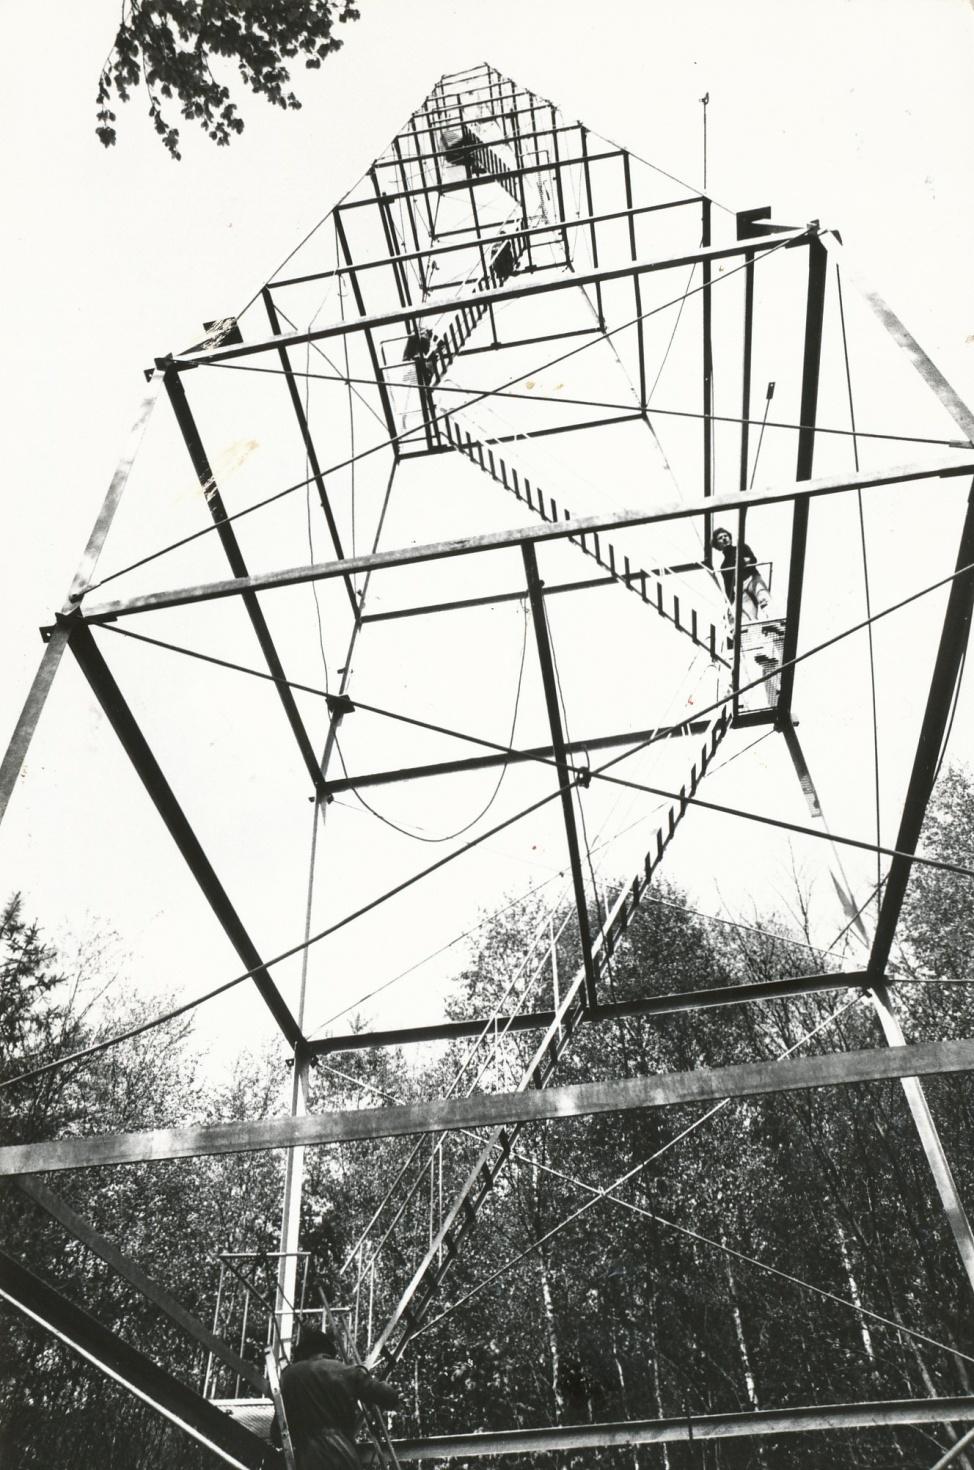 De oude uitkijktoren op de Amerongse Berg. Die is afgebroken nadat die dienst gedaan had als brandweertoren. De toren was door slecht onderhoud te gevaarlijk geworden en werd afgebroken.